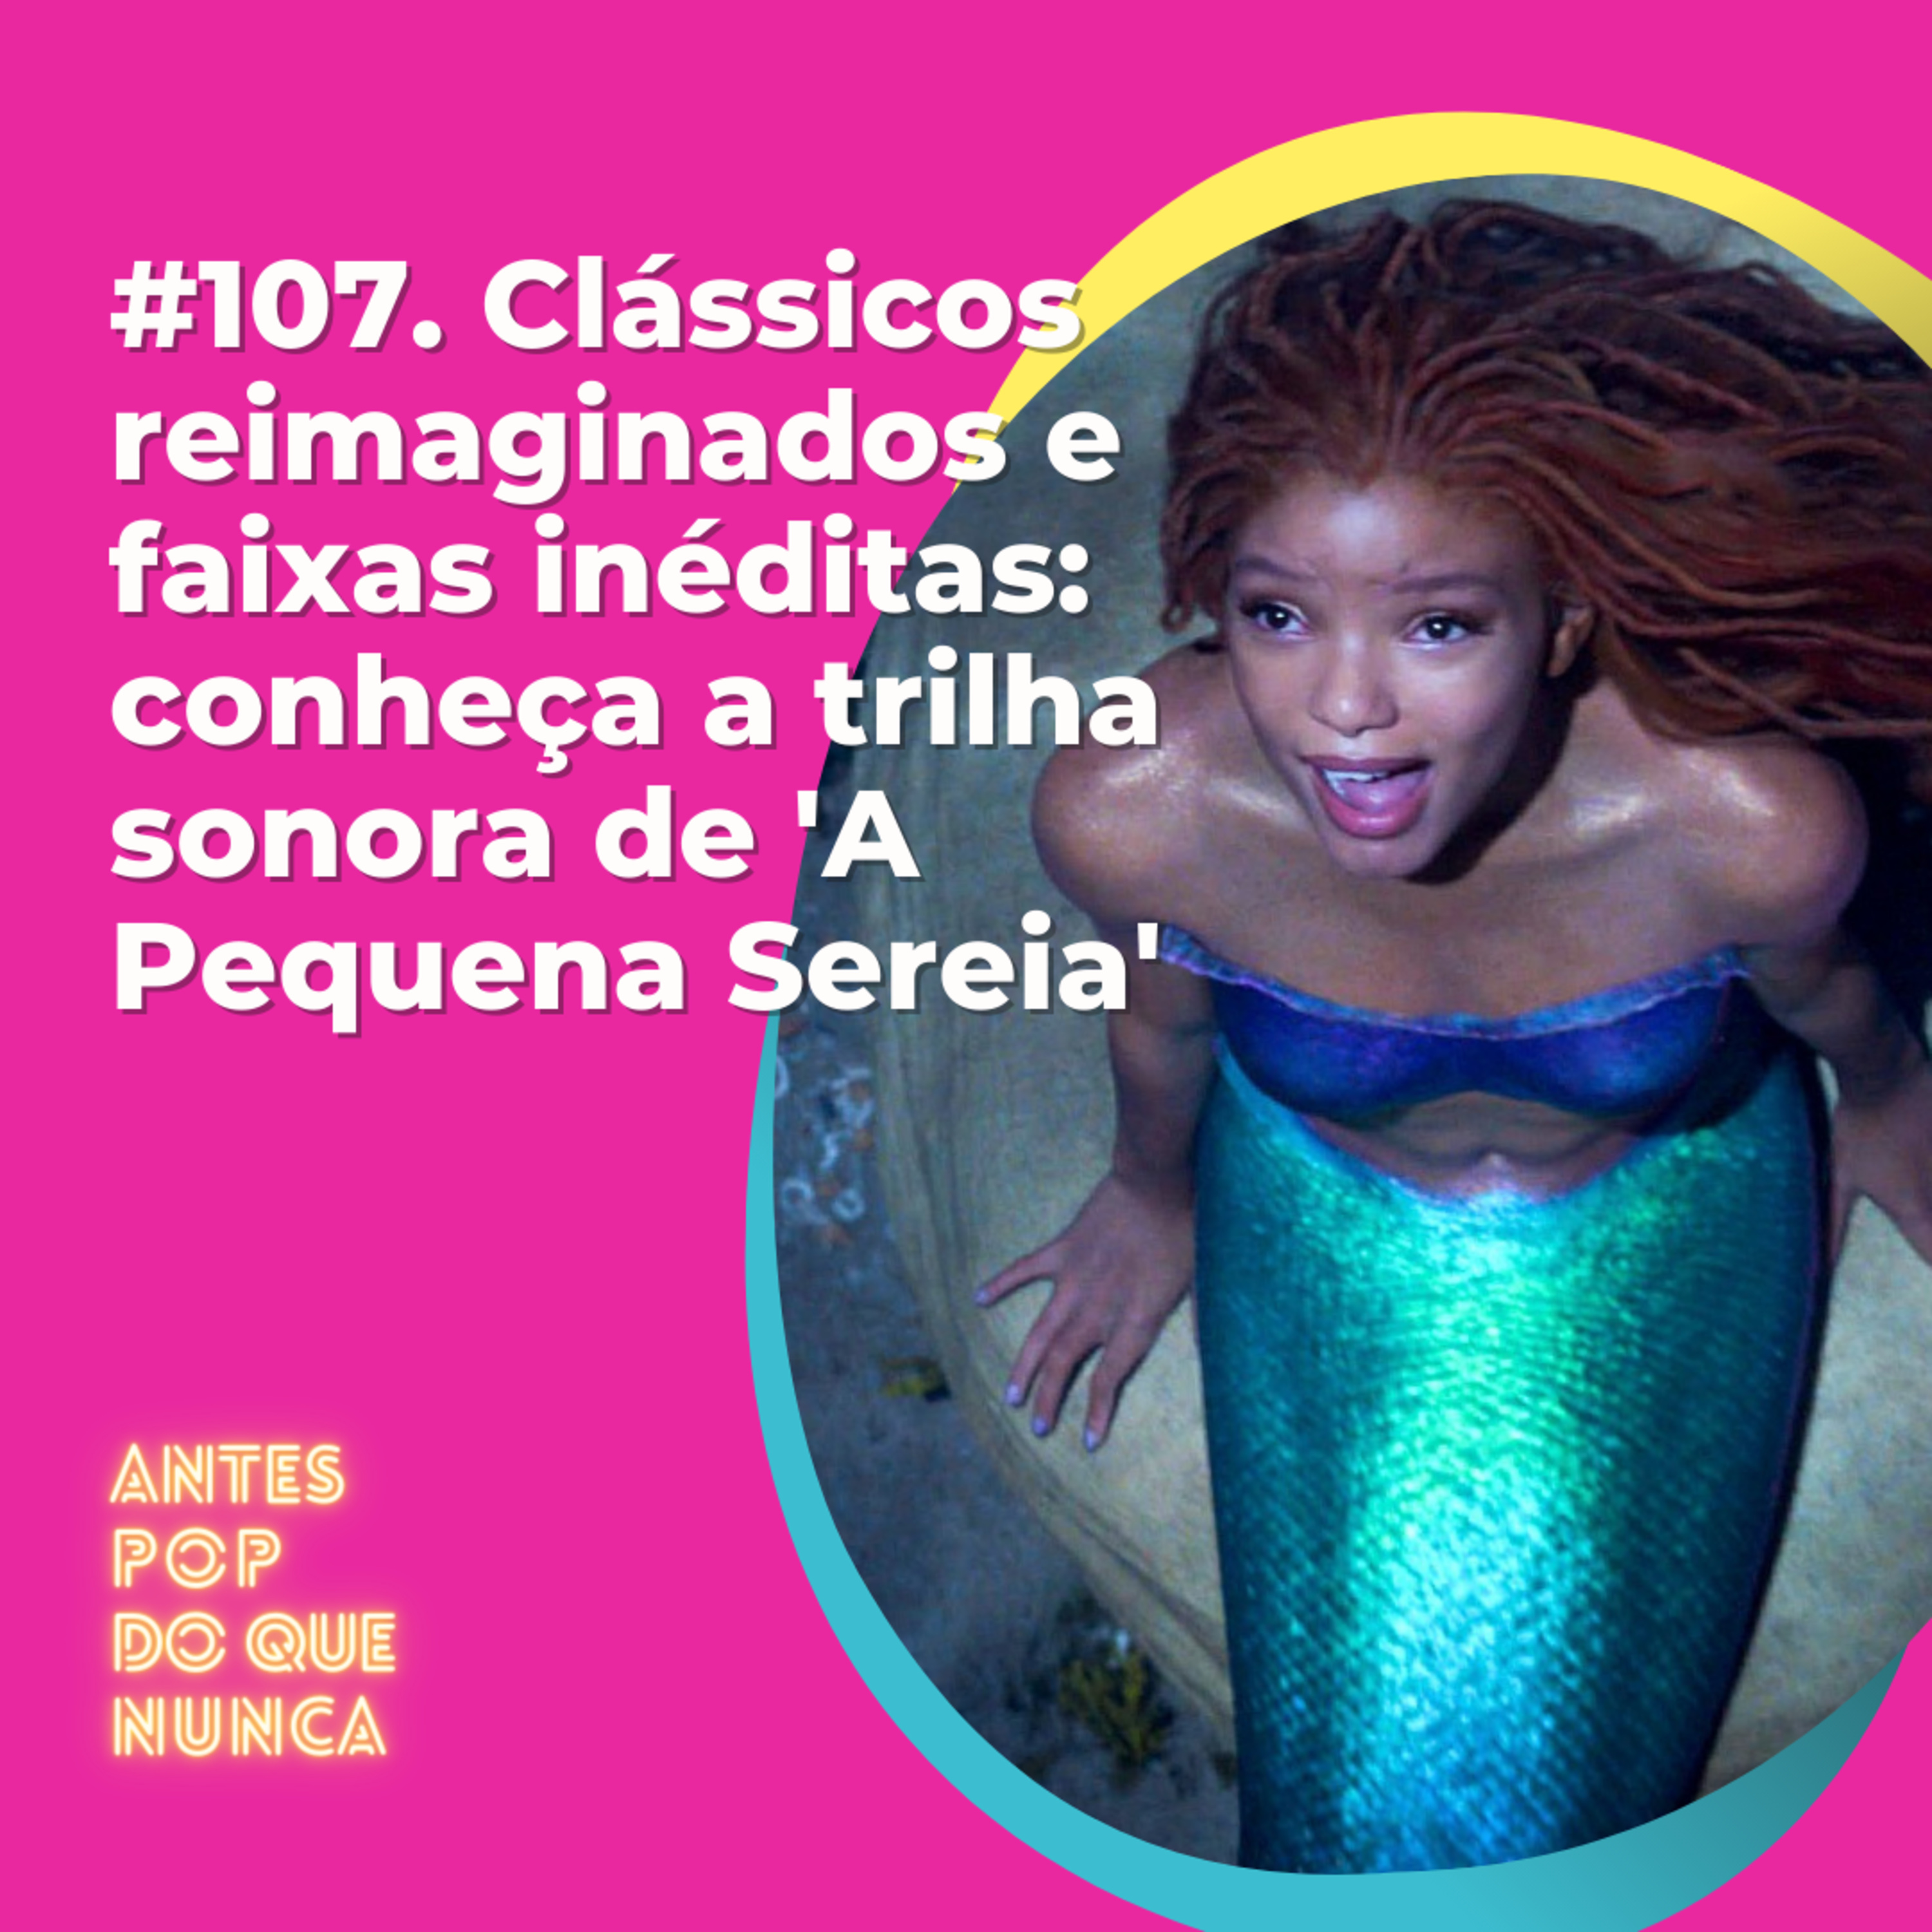 #107. Clássicos reimaginados e faixas inéditas: conheça a trilha sonora de 'A Pequena Sereia'